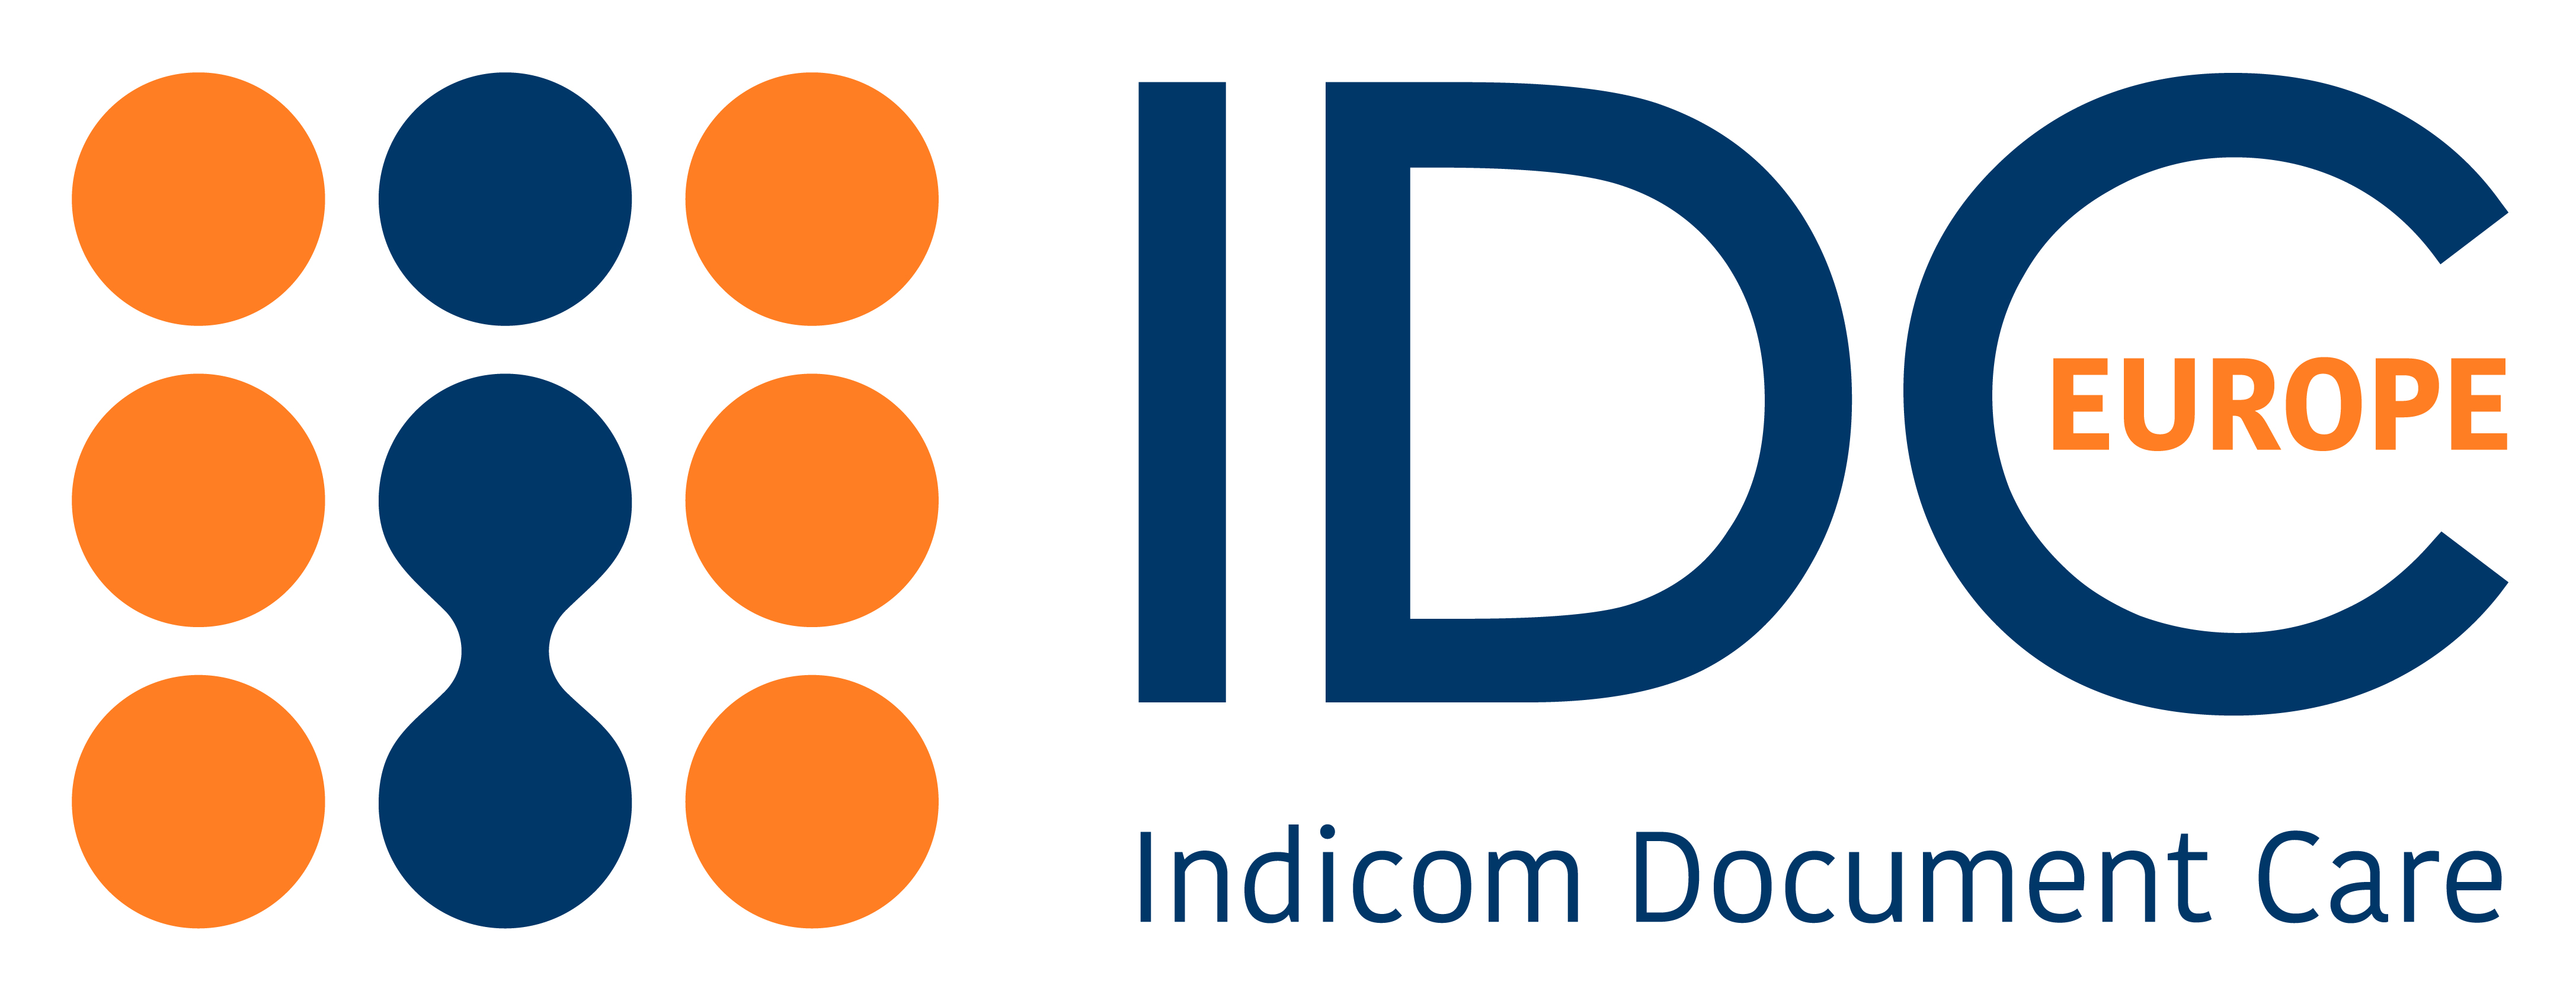 Logo IDC europe-01